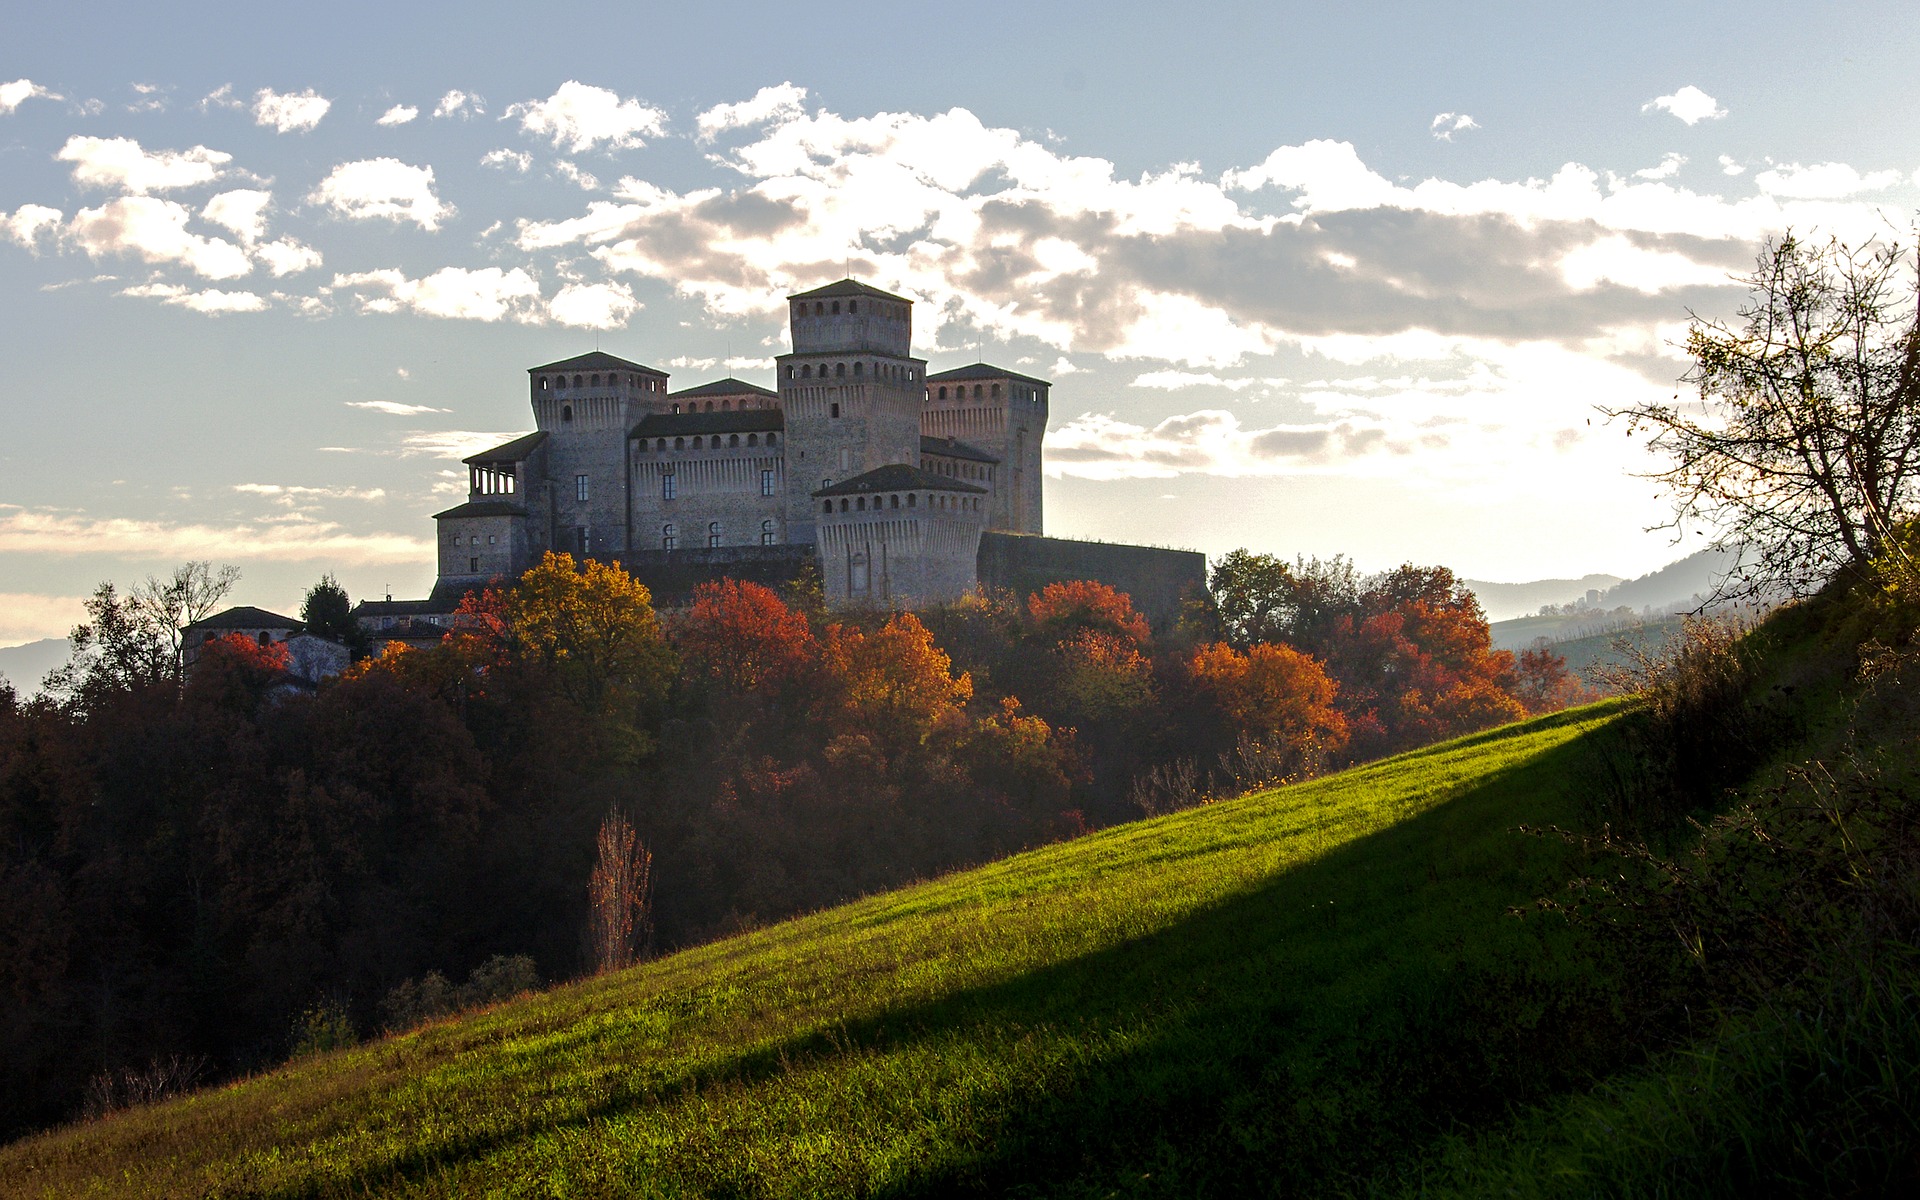 Das Castello di Torrechiara in Langhirano in der Provinz Parma im Herbst